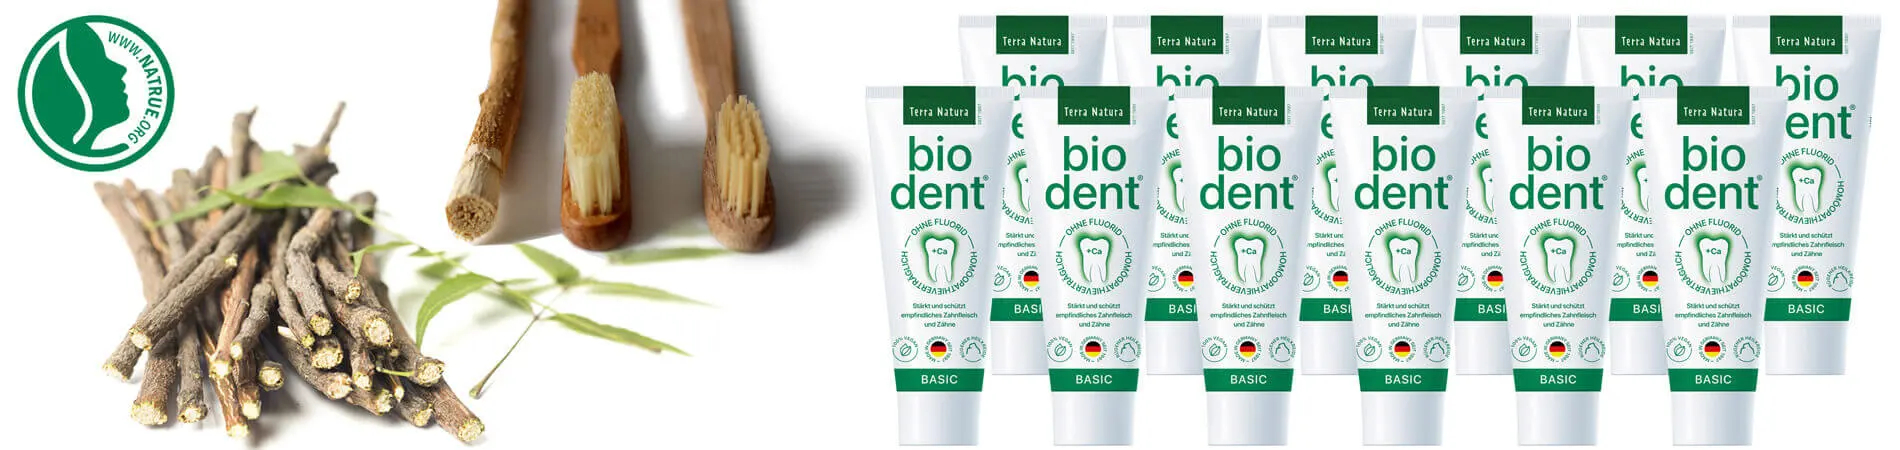 Biodent Basics dentifrice sans fluor Acheter Bio dent...